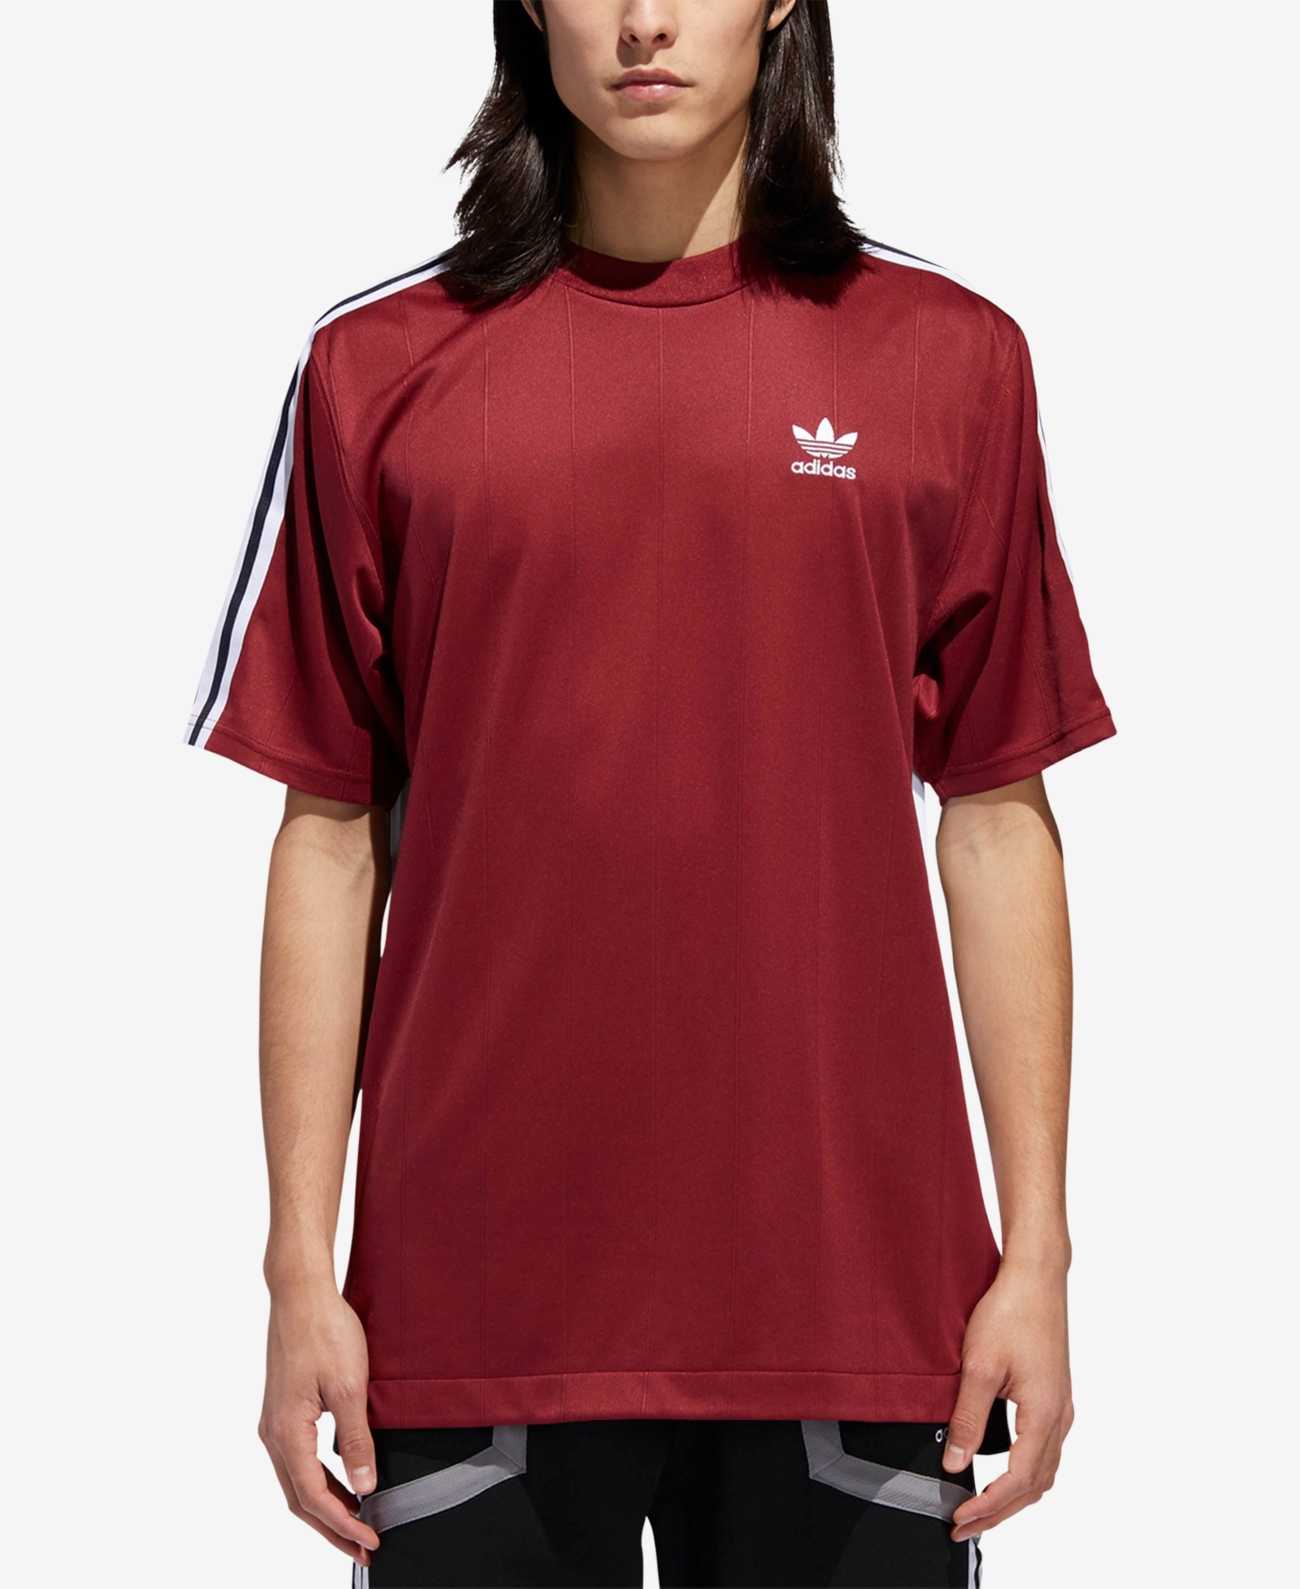 Adidas Men's Shirt - Red - XXL